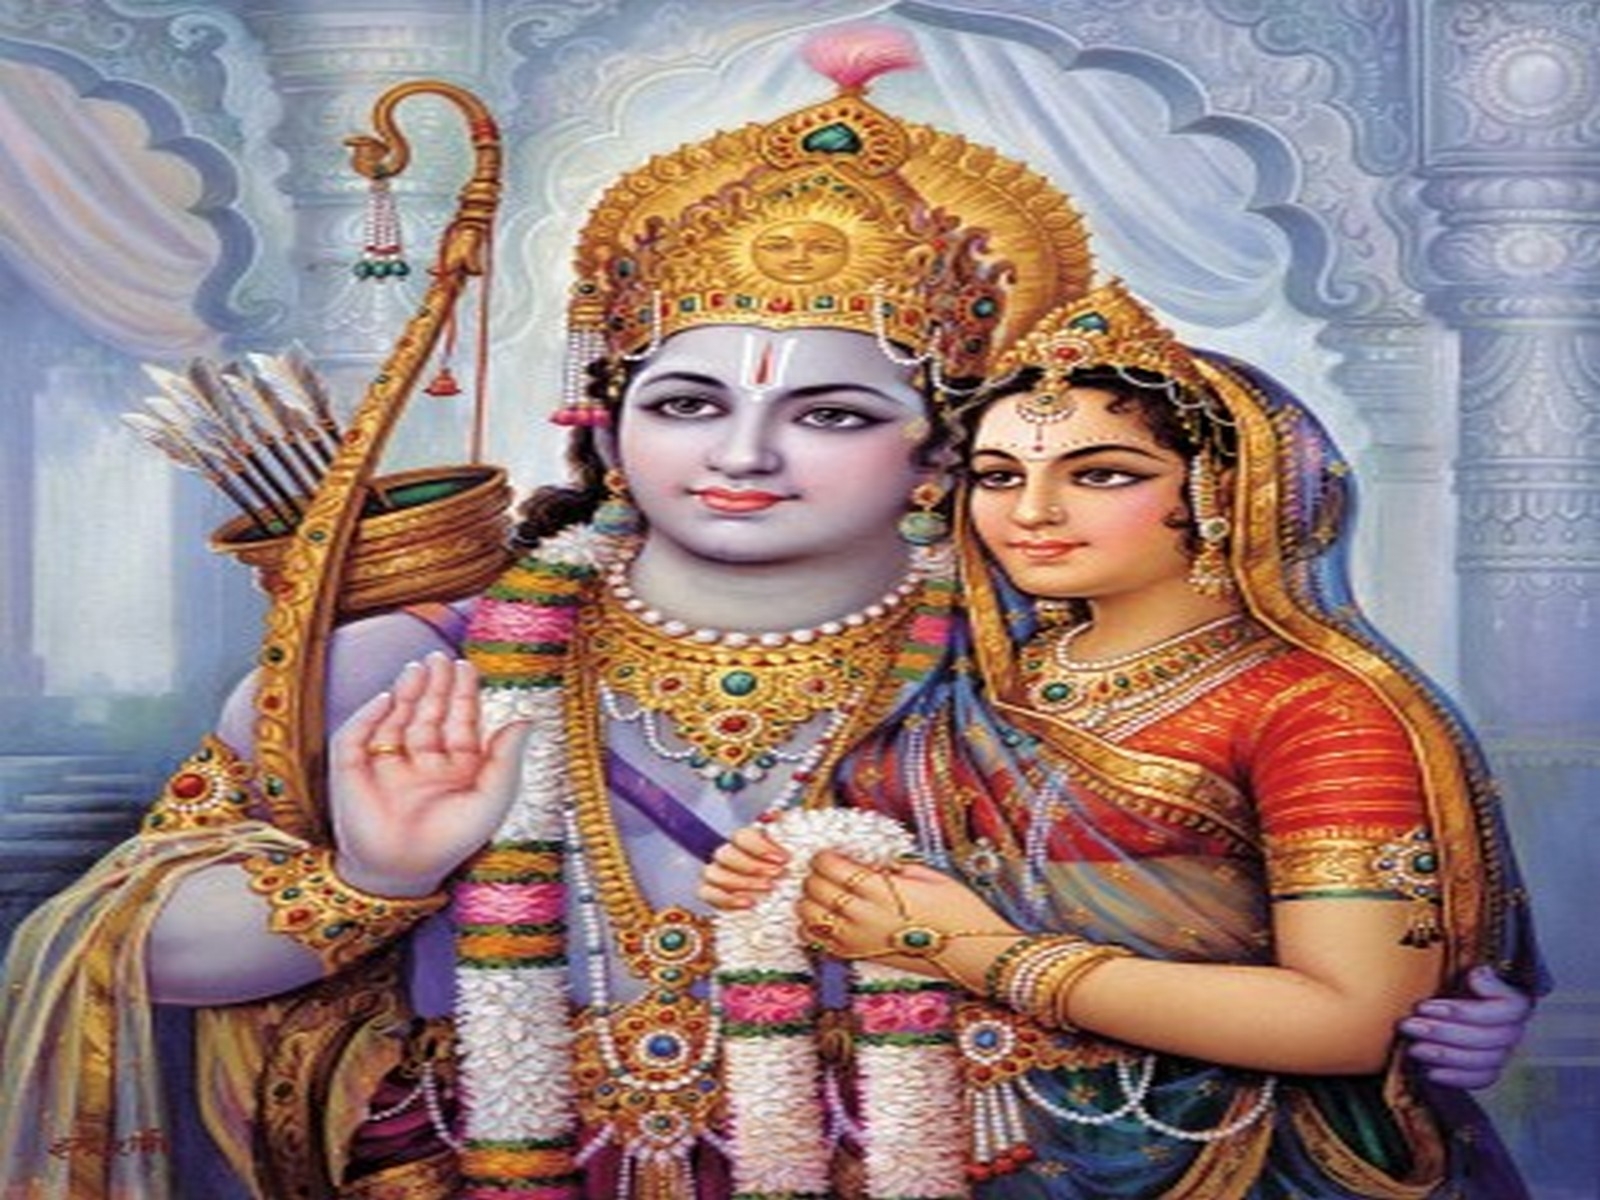 Wallpaper Shri Ram Sita From Ramayan Size Pic - Sita Ram - 1600x1200  Wallpaper 